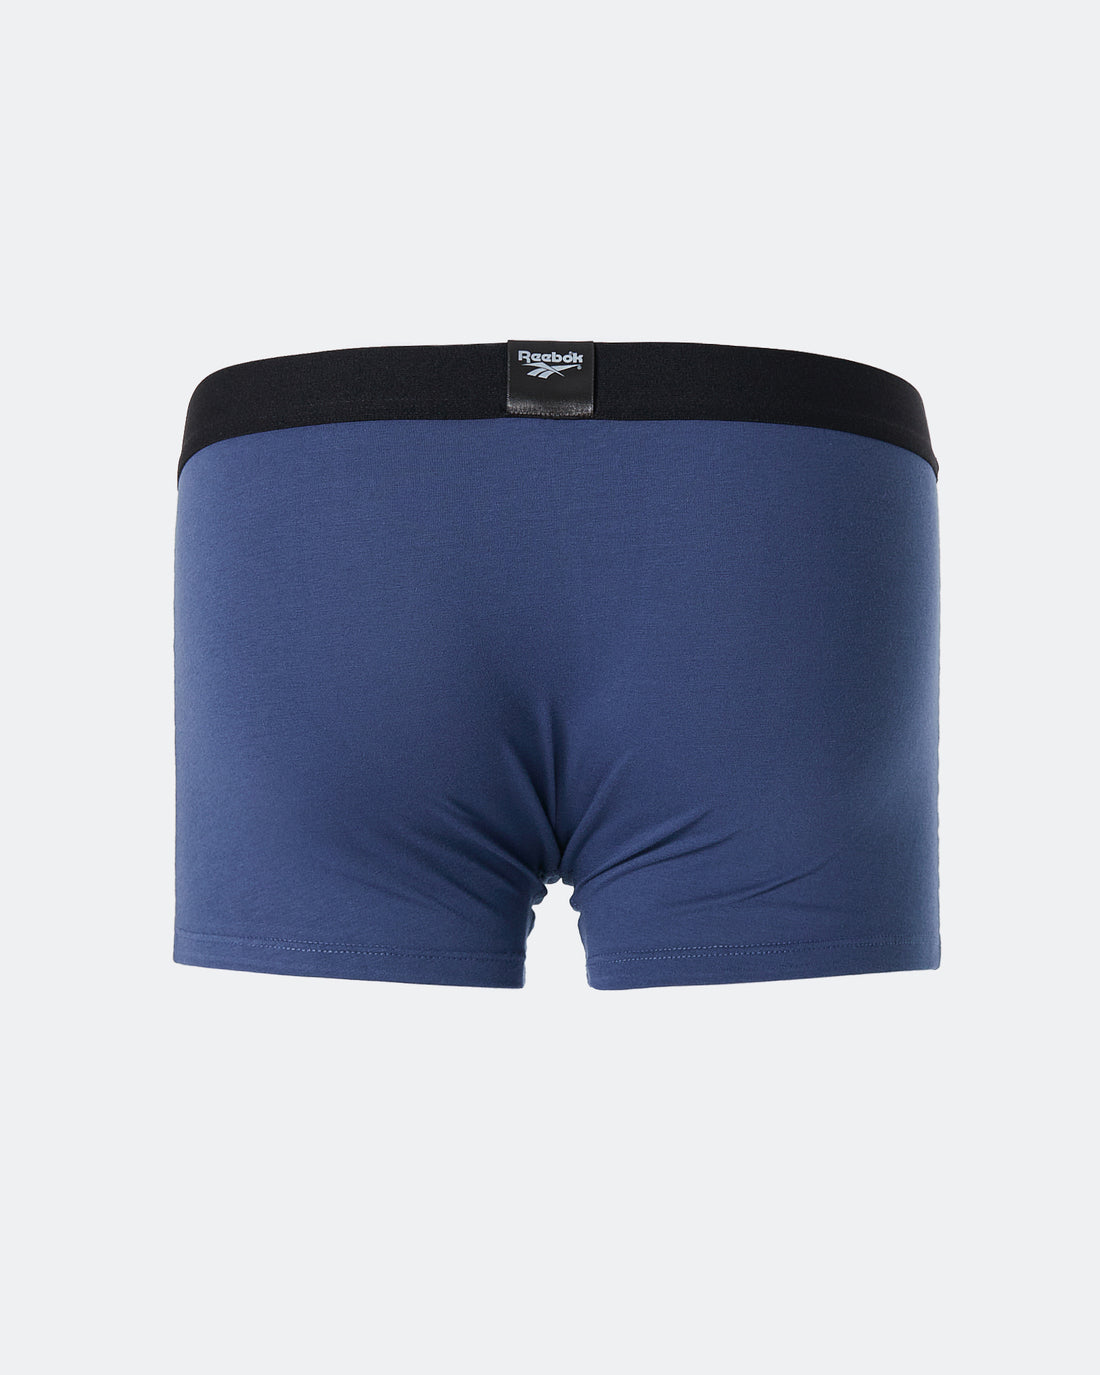 REE Waistband Printed Men Blue Underwear 5.90